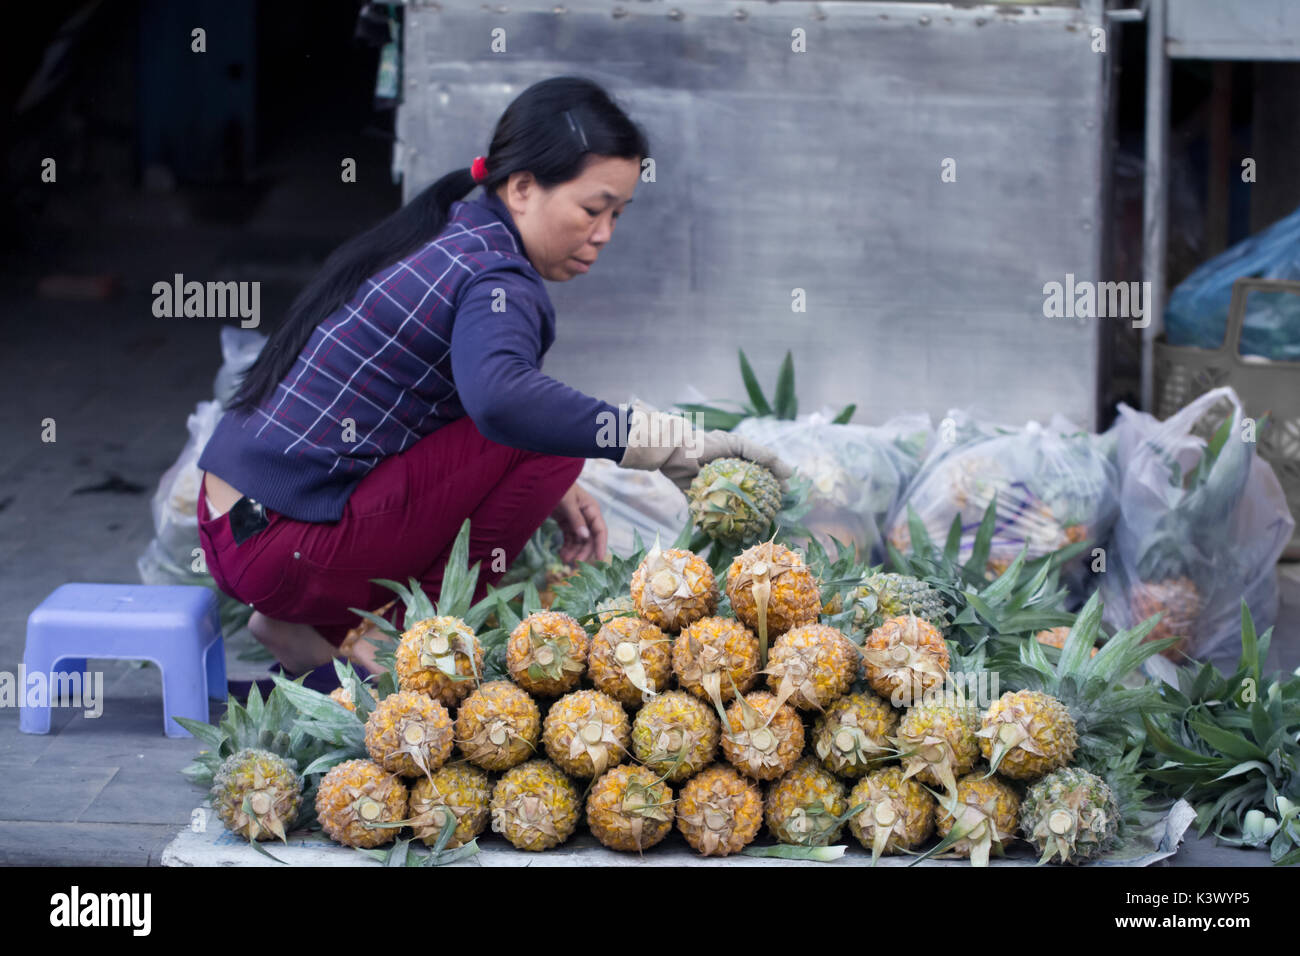 Saigon, Vietnam - Juin 2017 : femme vendant des ananas sur la rue du marché, Saigon, Vietnam. Banque D'Images